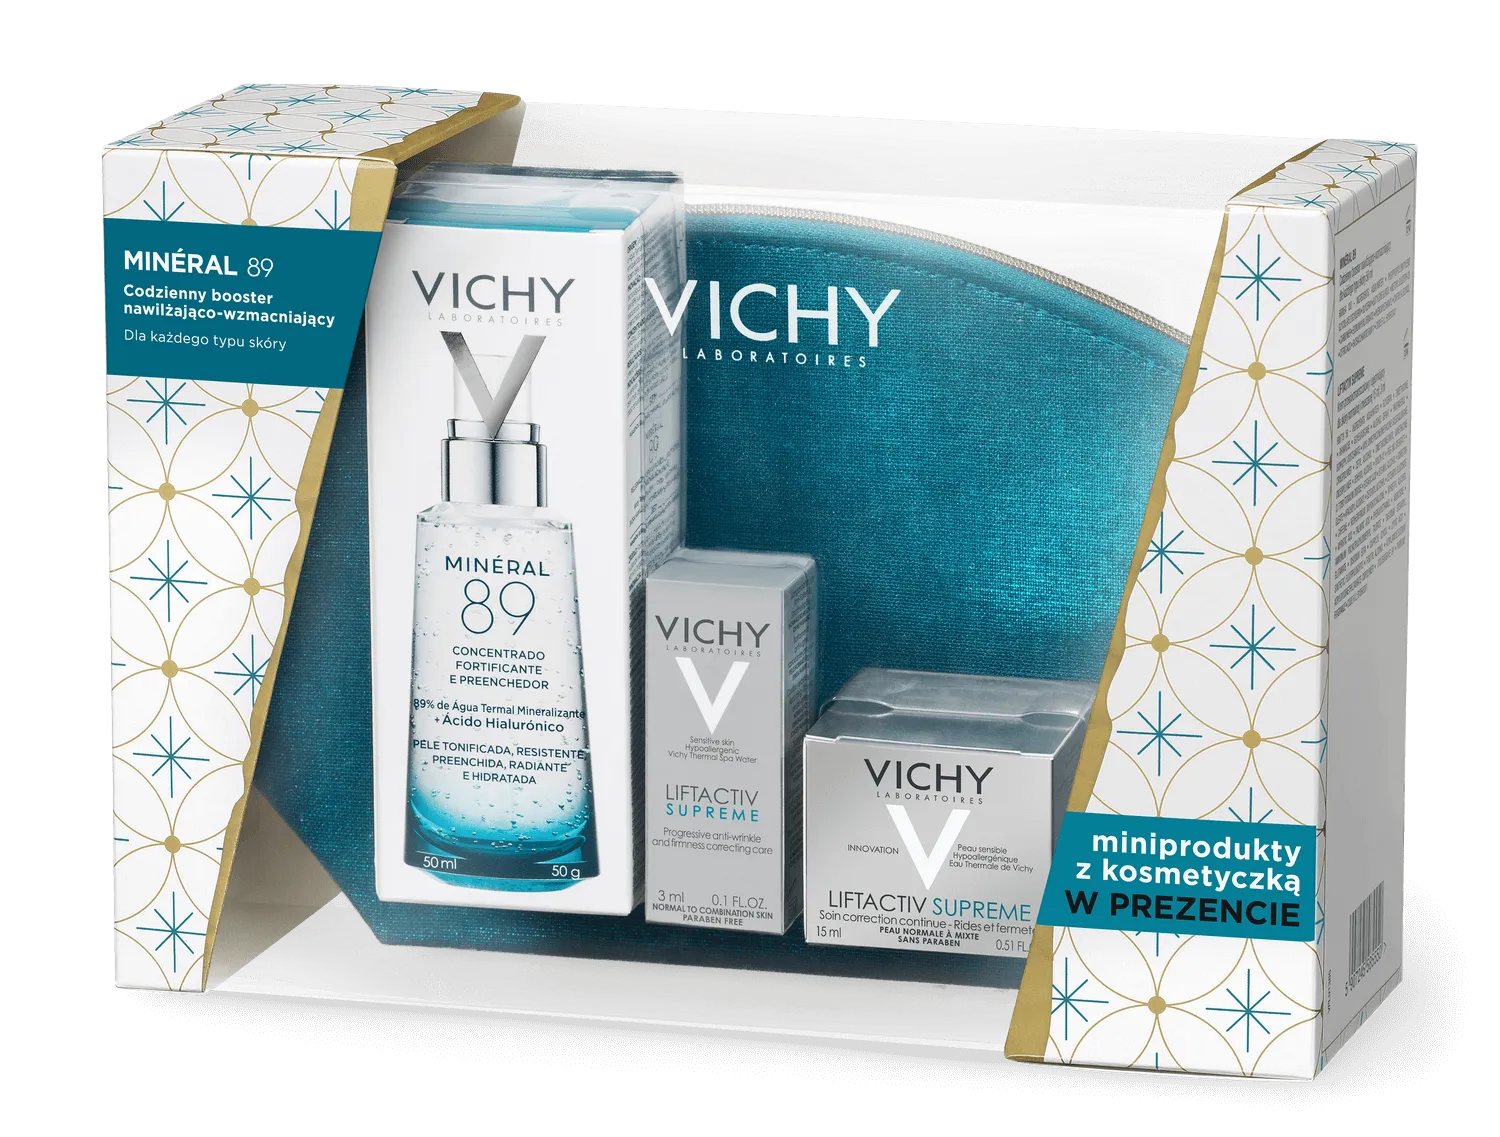 Vichy zestaw Mineral 89, codzienny booster nawilżająco-wzmacniający, 50 ml + krem przeciwzmarszczkowy na dzień dla skóry normalnej i mieszanej Liftactiv Supreme, 15 ml +3 ml